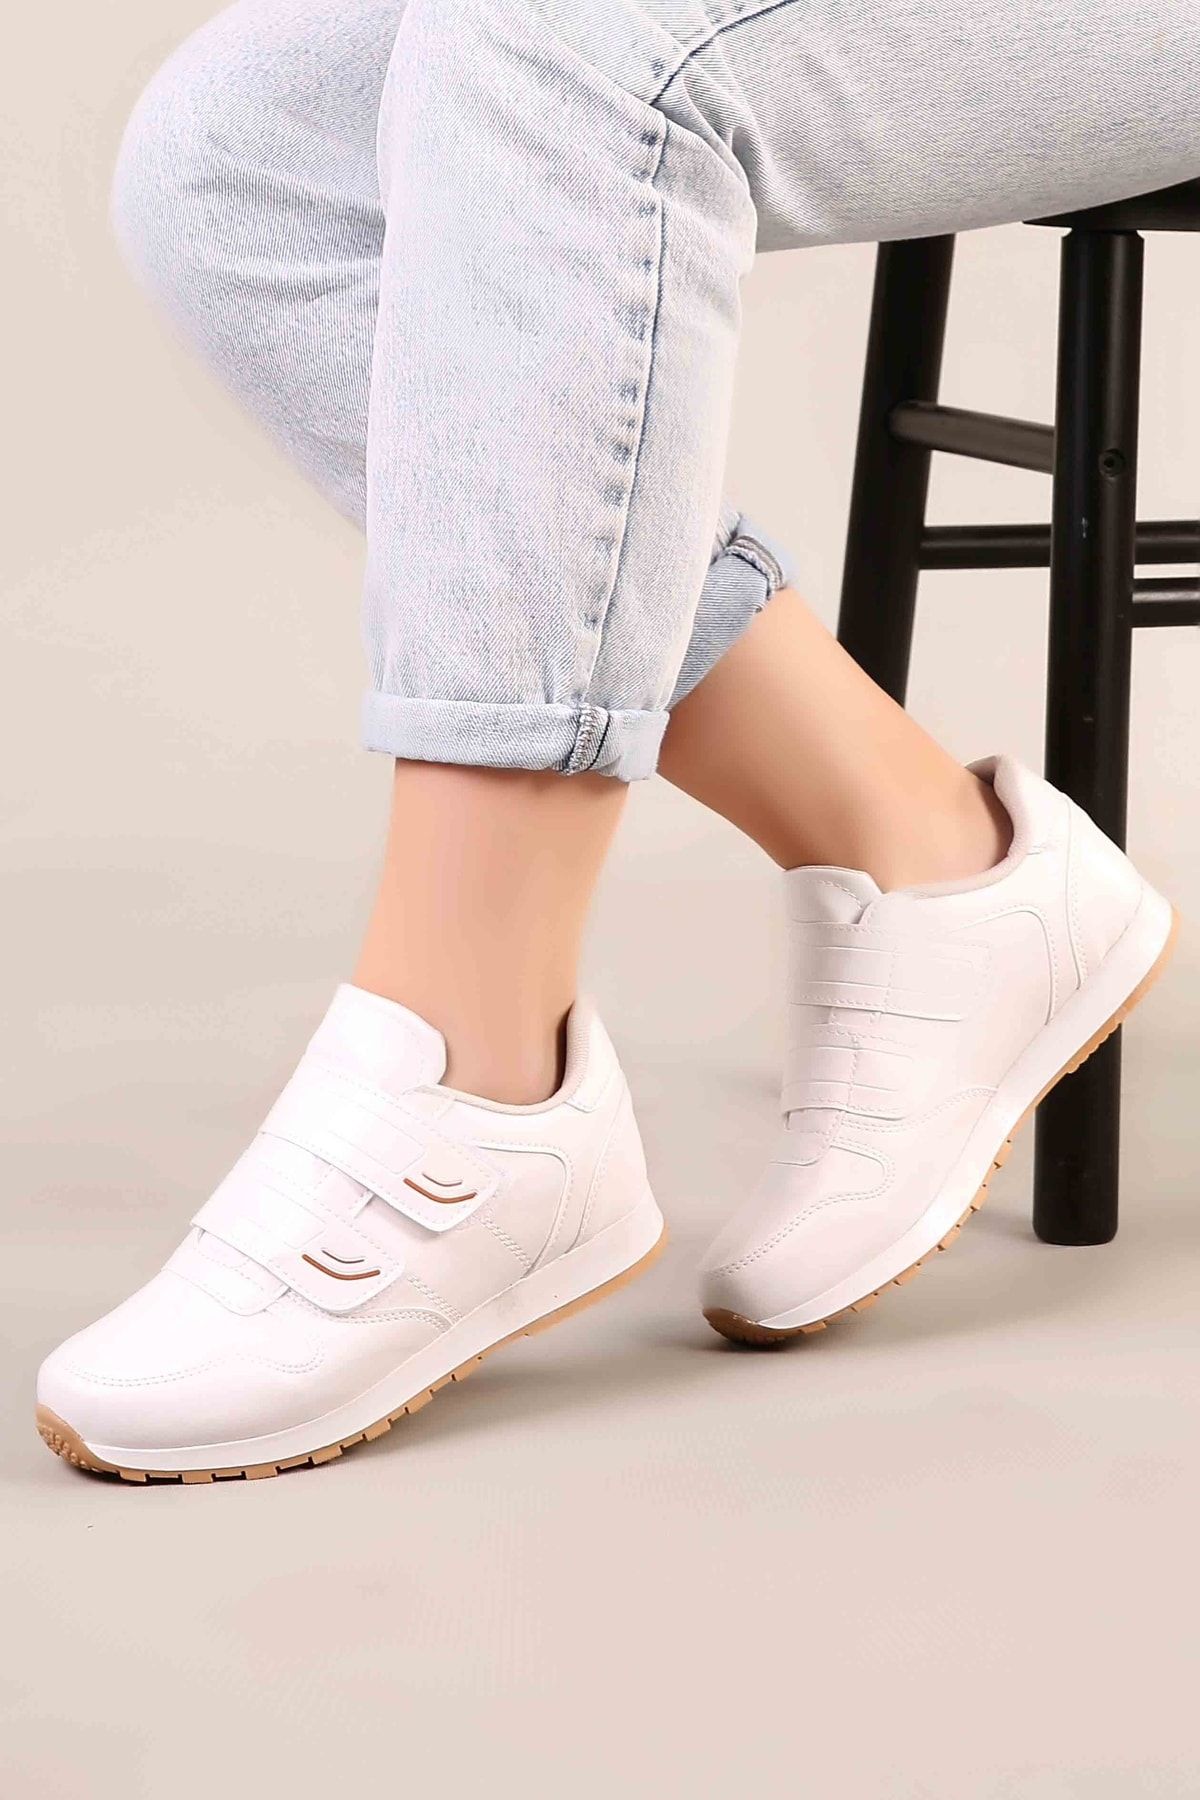 AYN-Shoes Unisex Beyaz Renk Çift Bantlı Spor Ayakkabı